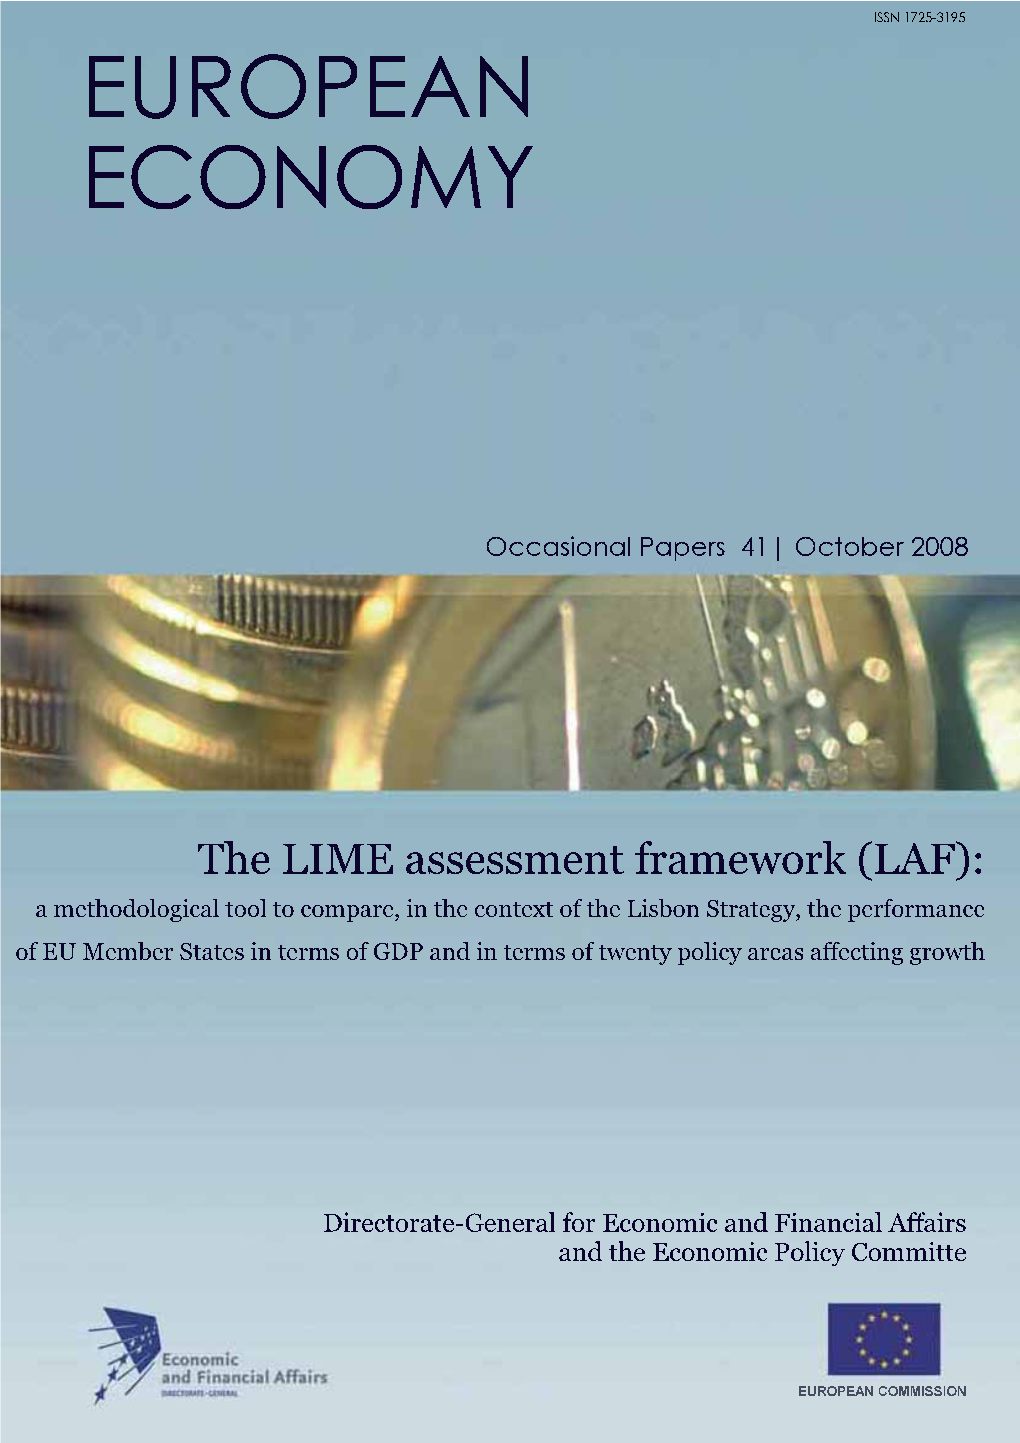 The LIME Assessment Framework (LAF)